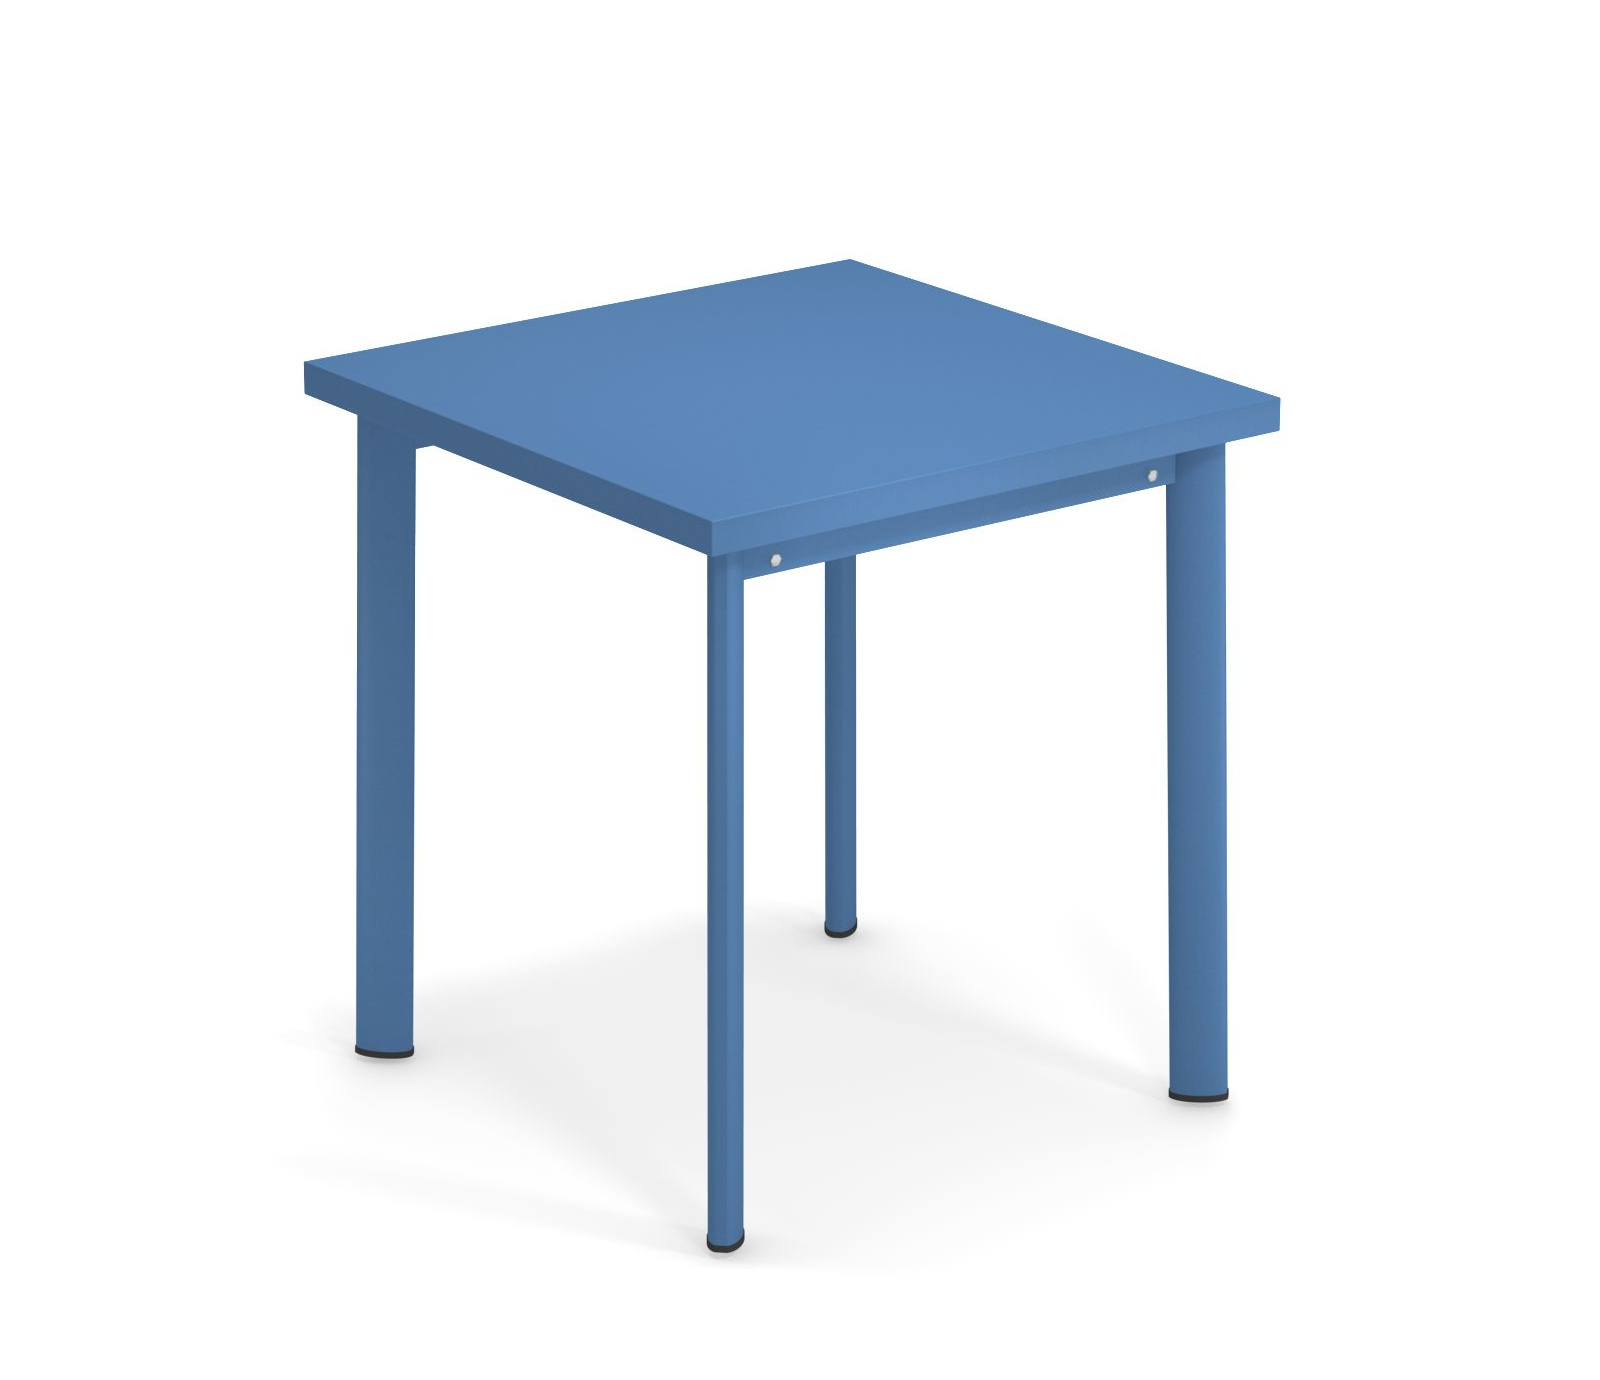 Star Tisch, 70 x 70 cm, marineblau